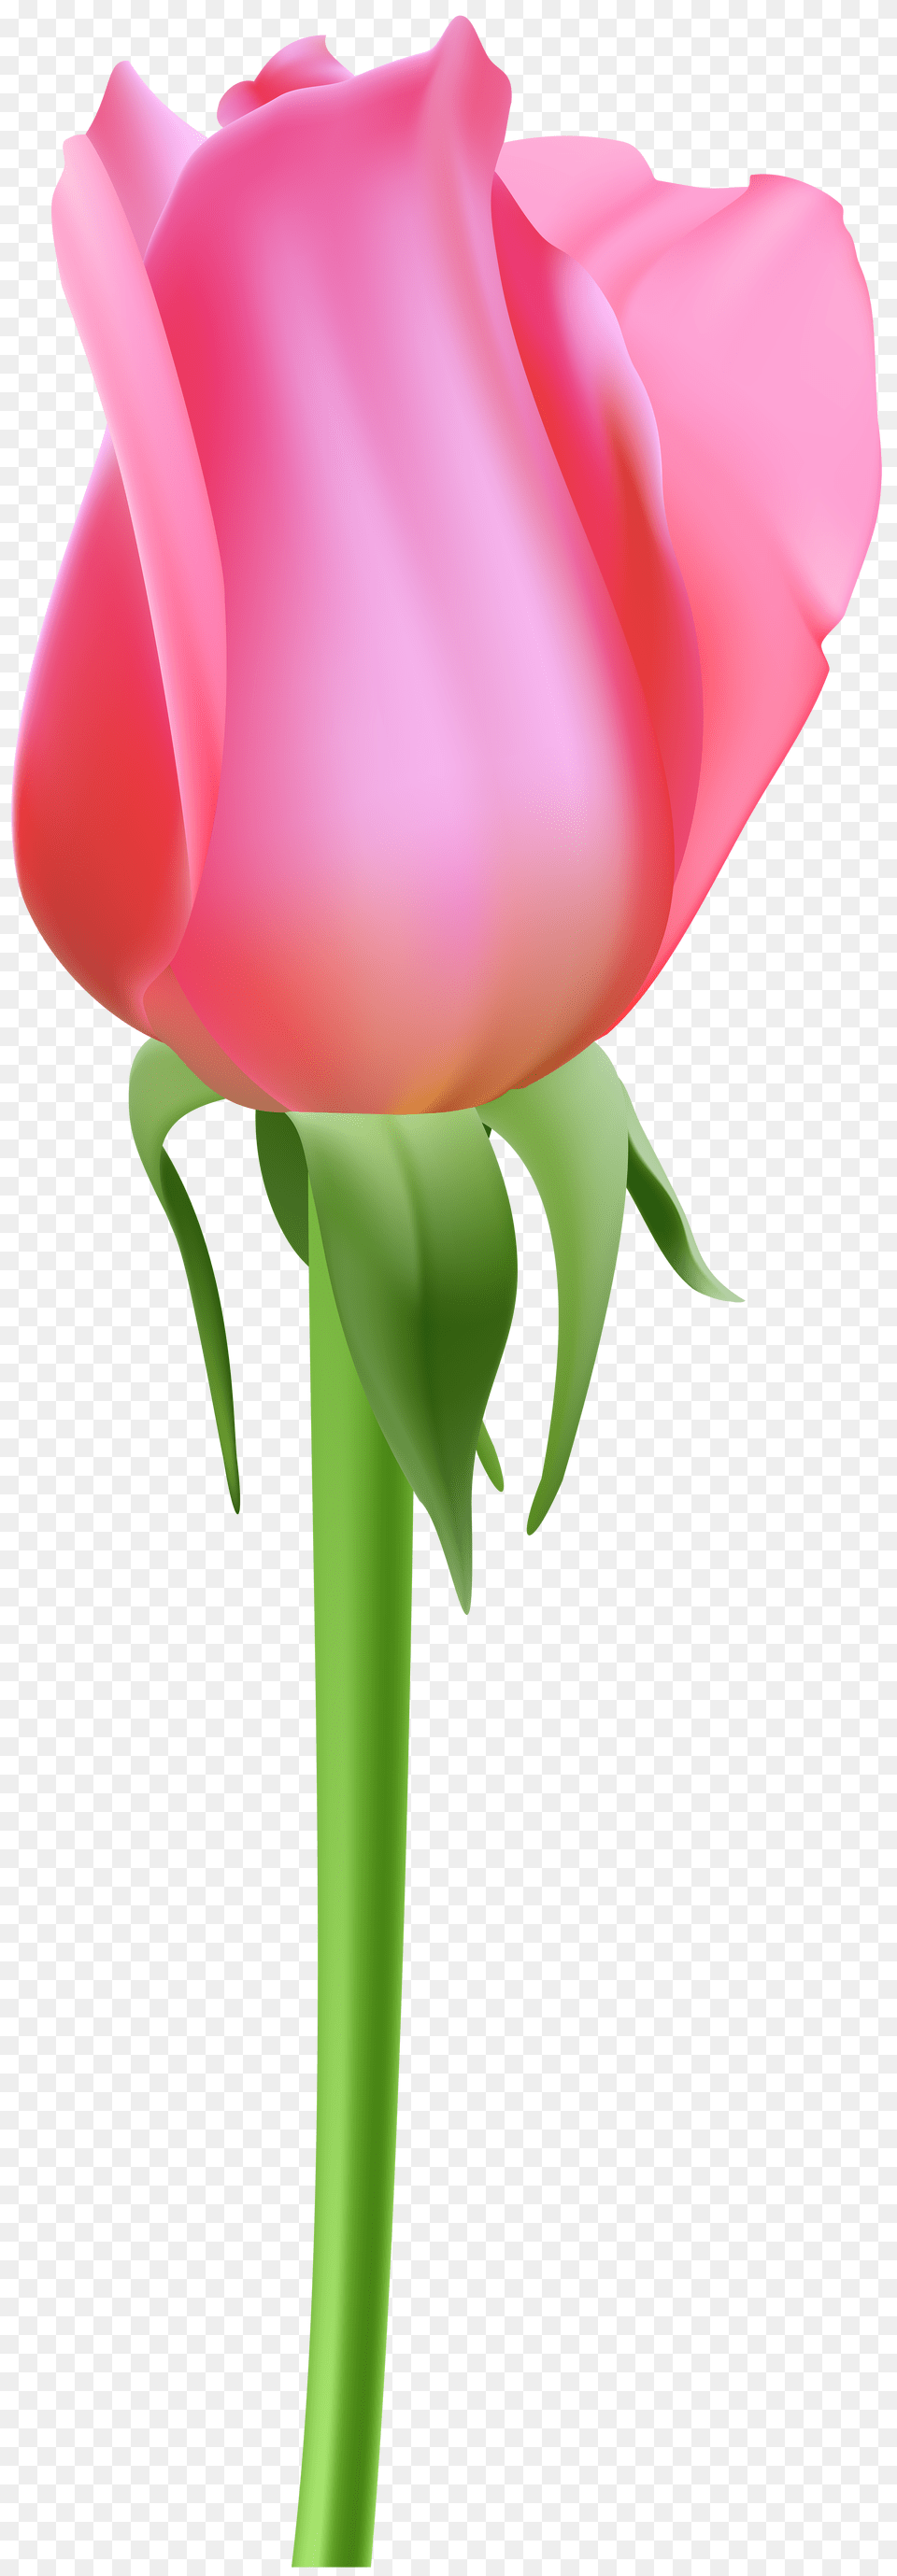 Rose Bud Pink Clip, Flower, Plant, Tulip, Petal Png Image